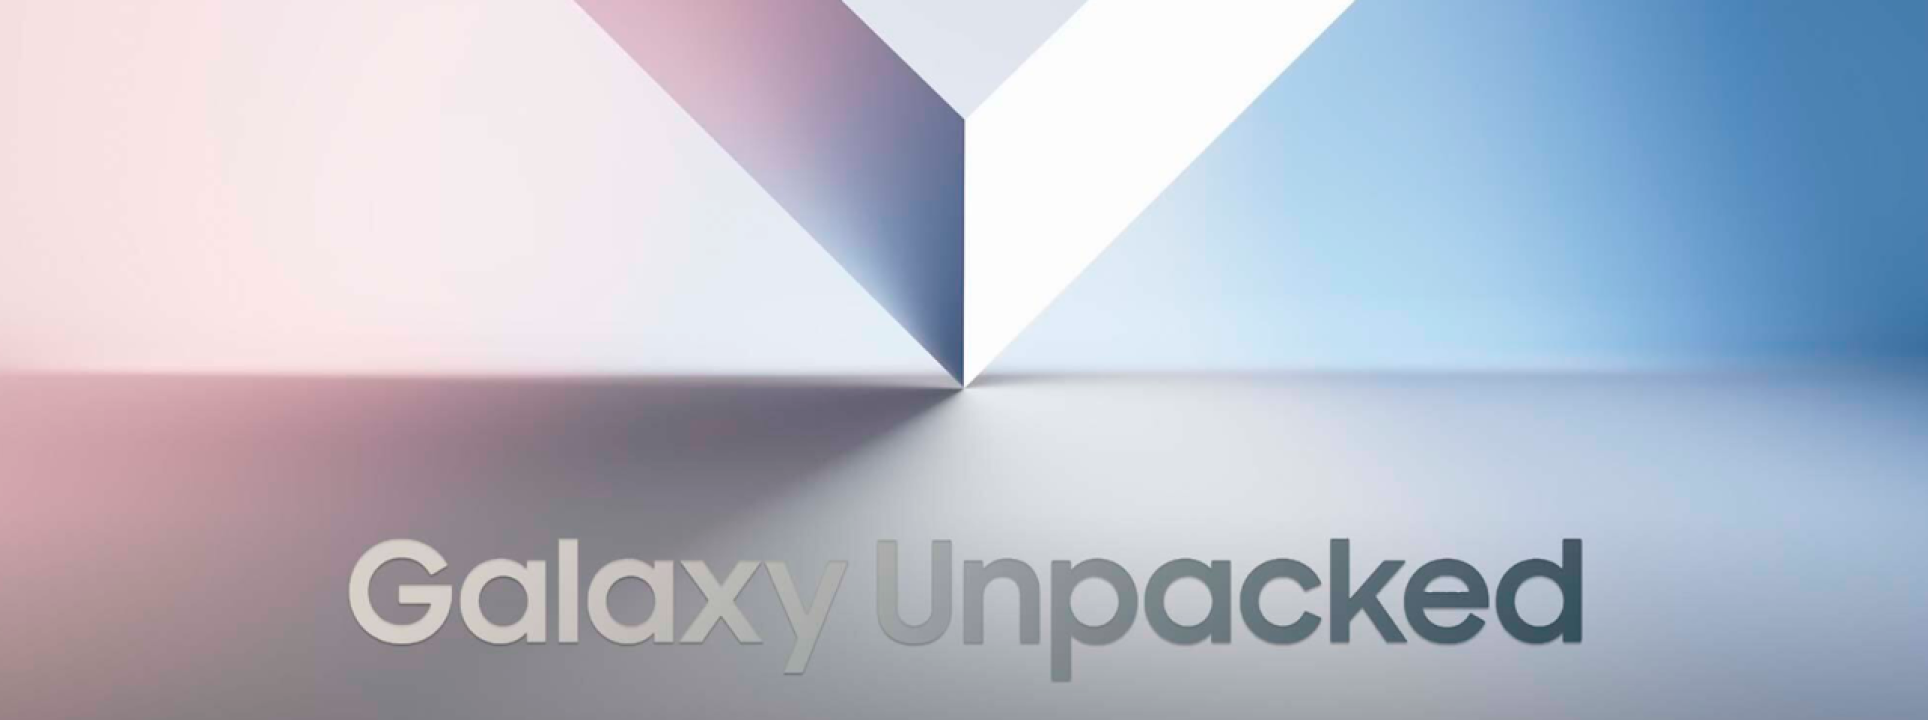 Galaxy Unpacked: descubre las novedades de Samsung  blog post